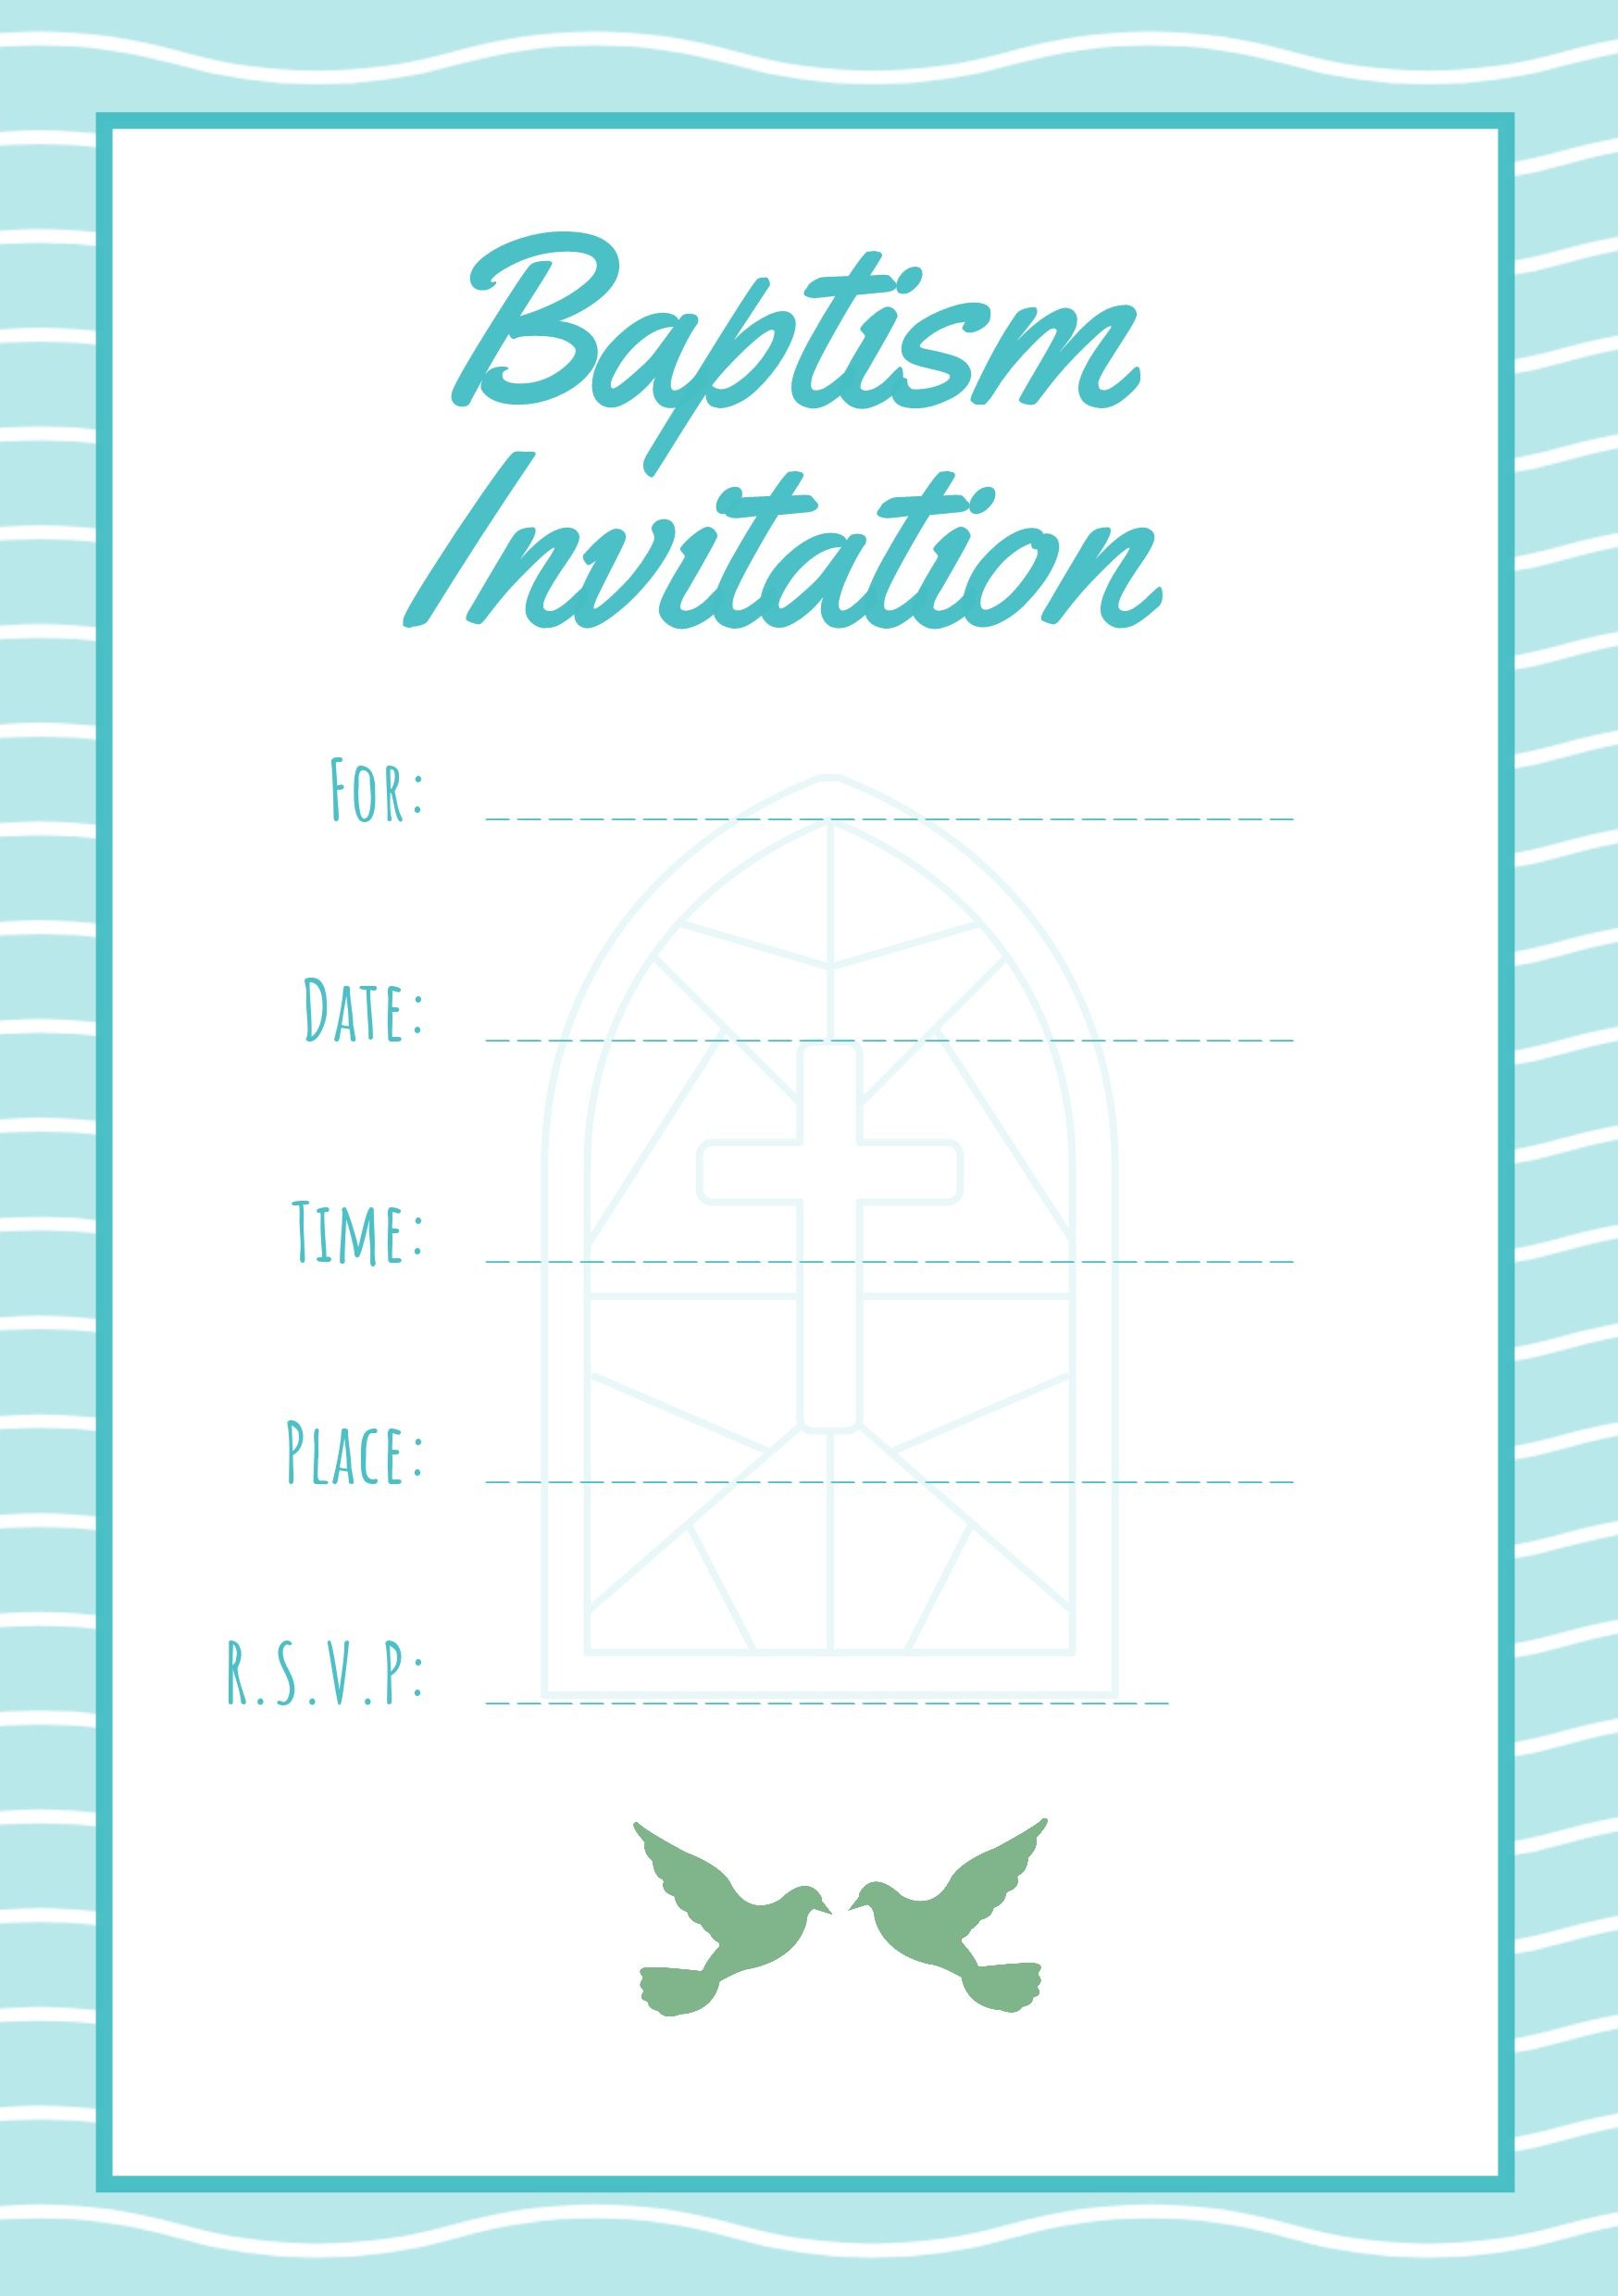 Convite de Batismo Azul e Branco com Texto em Caligrafia e Ícones Religiosos - O Guia Completo de Fontes: 5 Tipos Essenciais de Fontes em Tipografia - Imagem